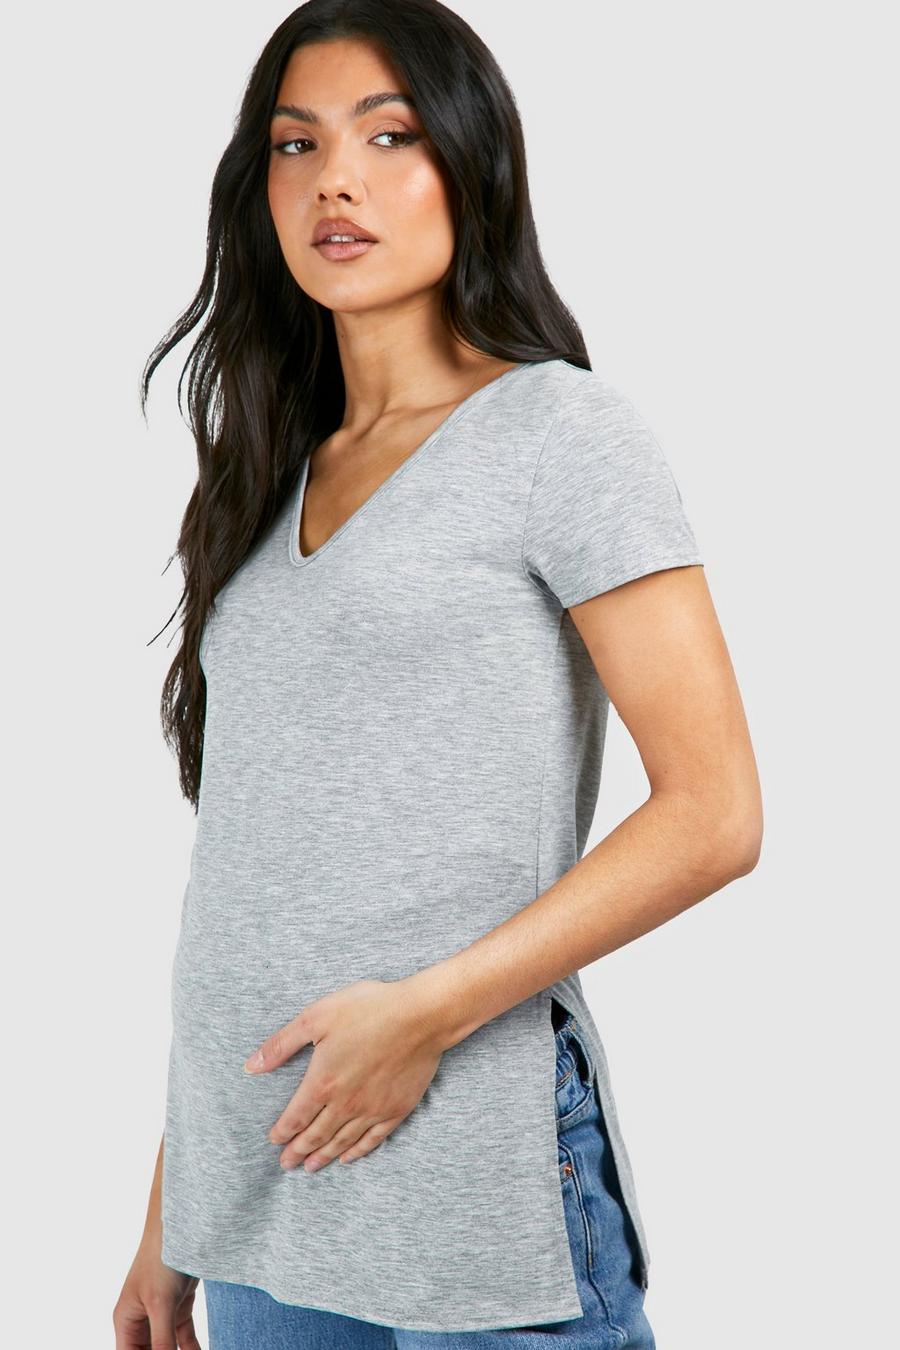 MakeMeChic Women's Maternity T-Shirt Long Sleeve Split Side Pregnancy Tee  Tops